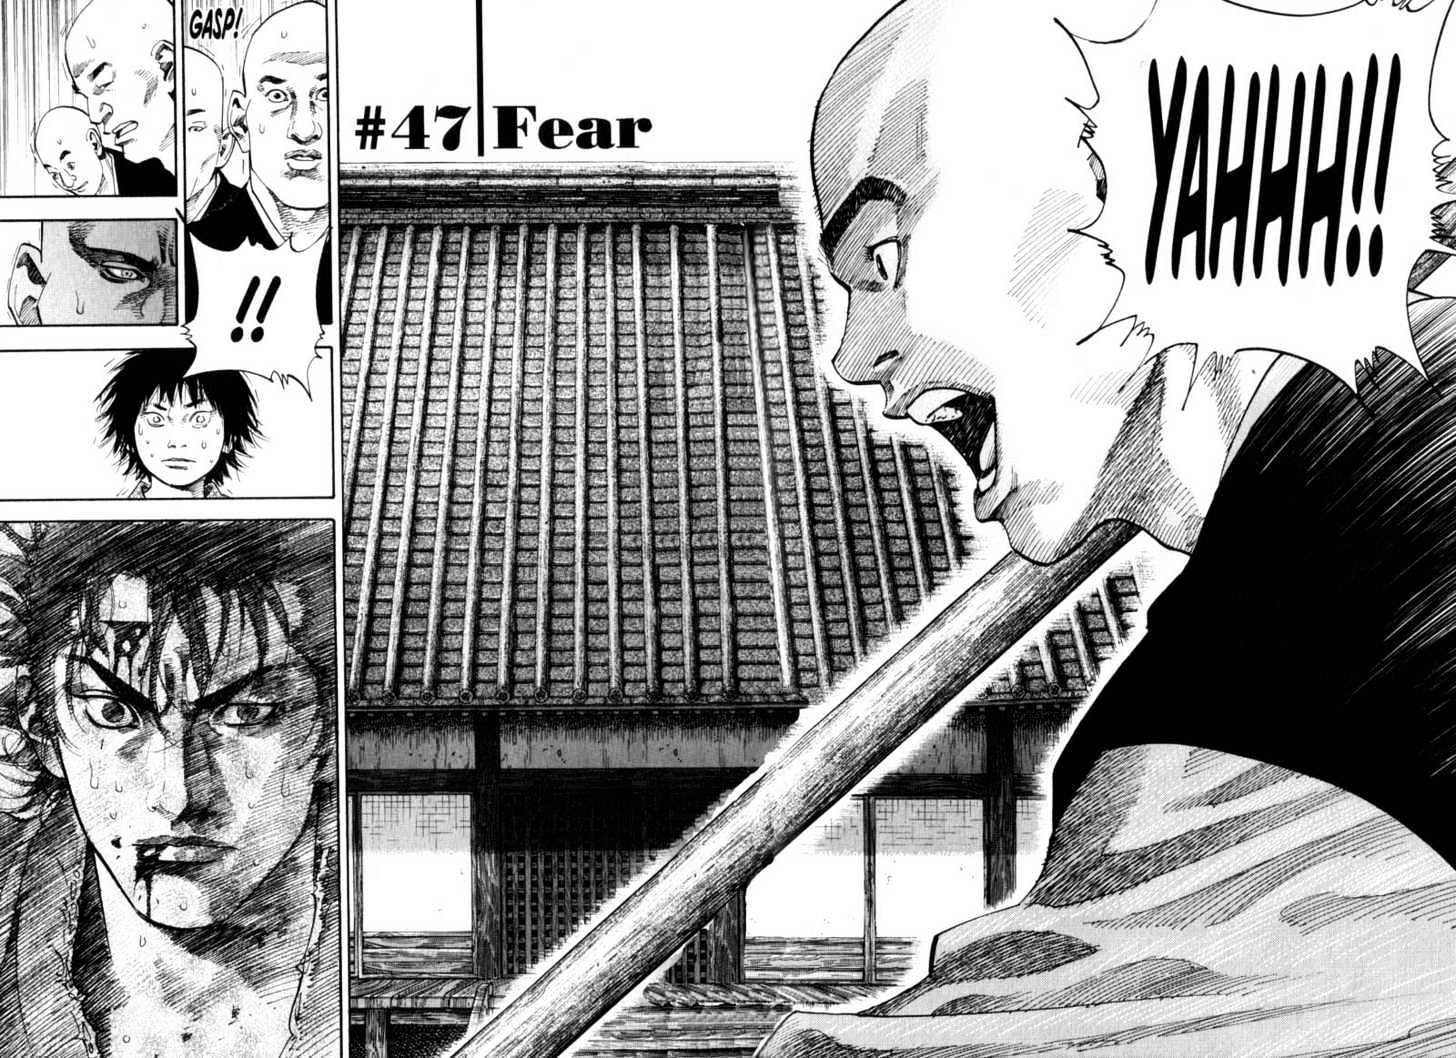 Vagabond Vol.5 Chapter 47 : Fear page 4 - Mangakakalot